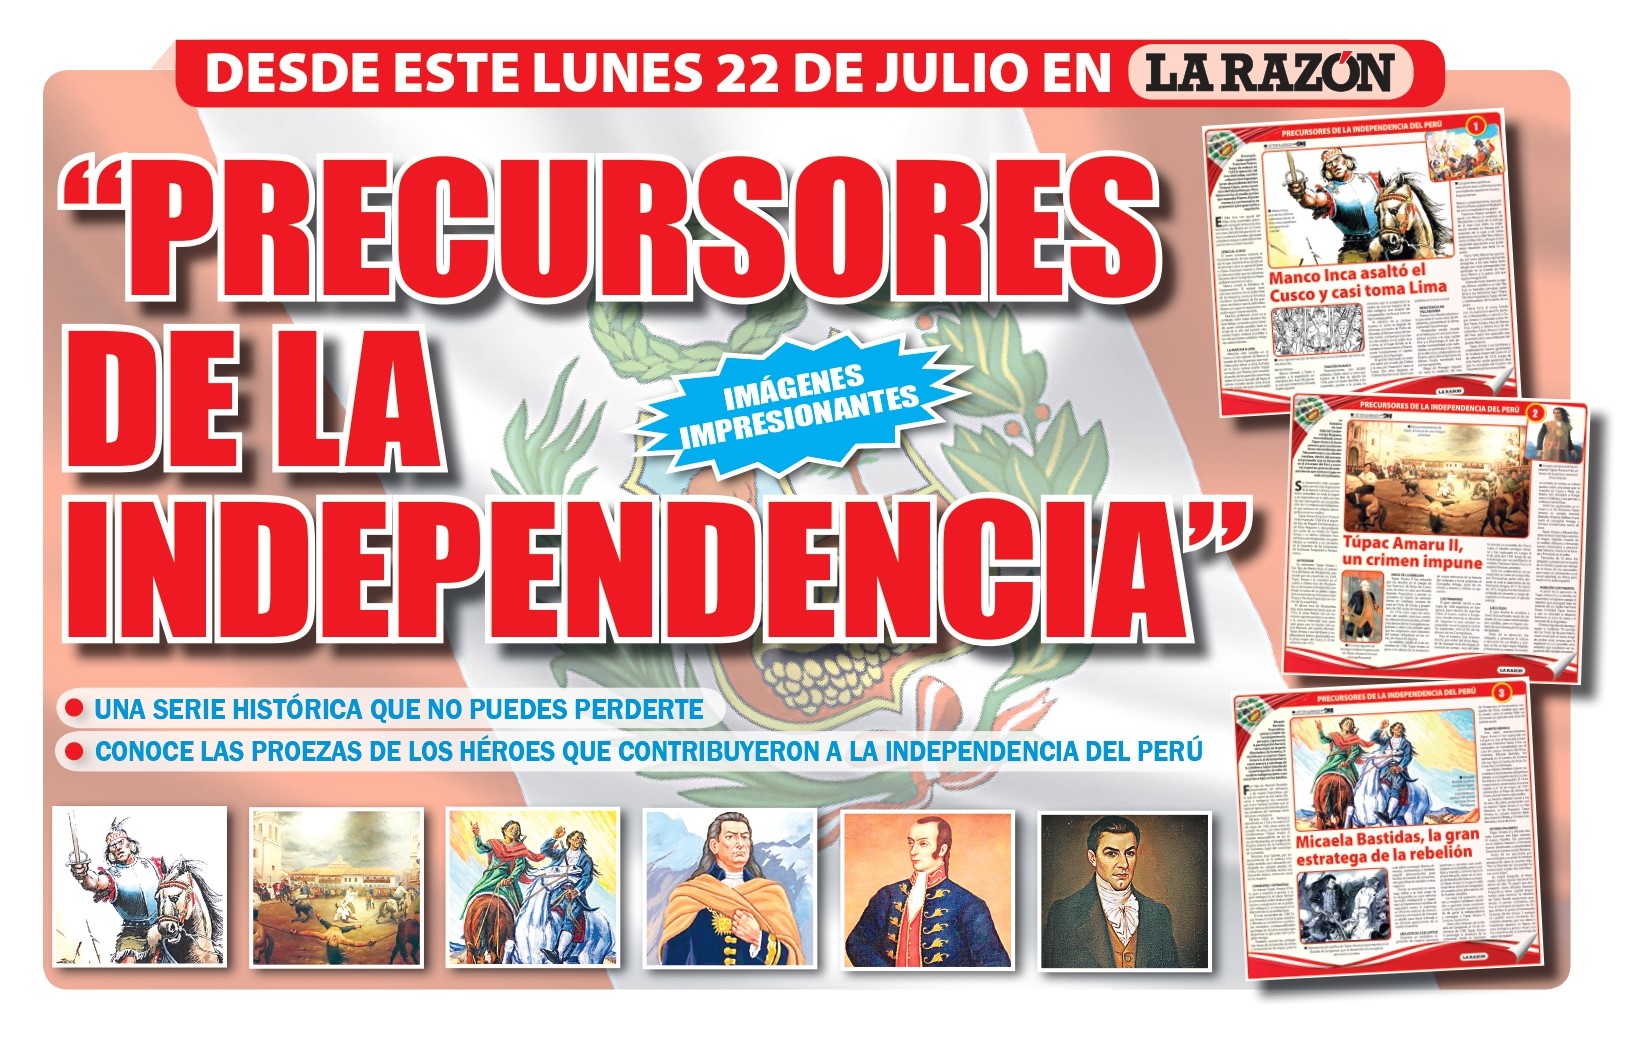 Colección "Precursores de la Independencia"